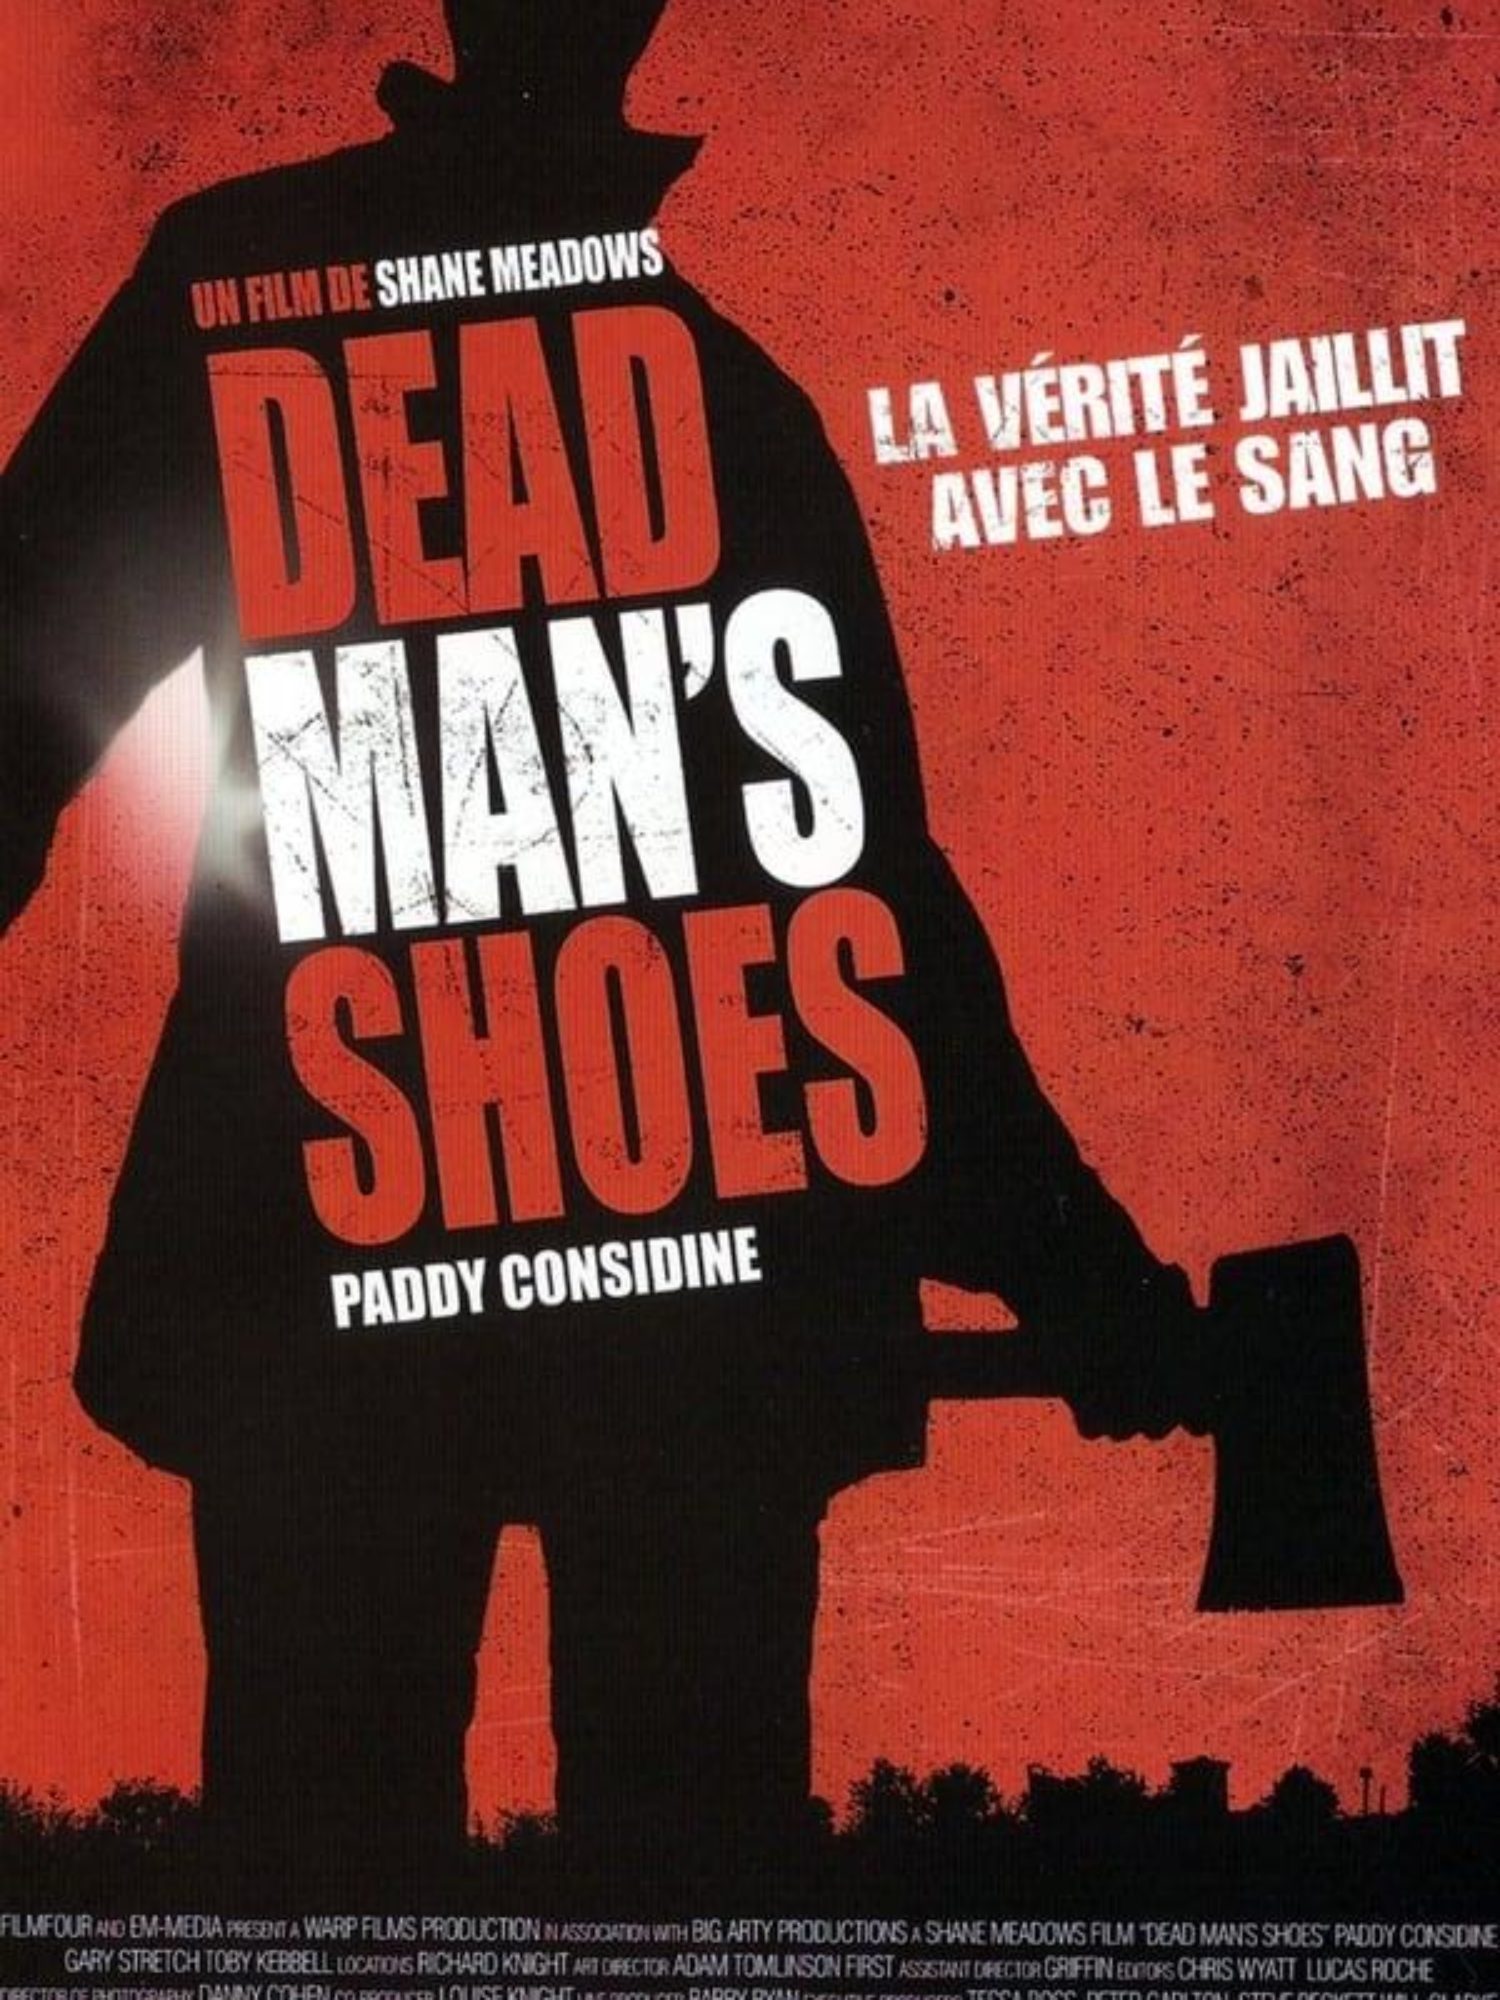 Dead Man’s Shoes